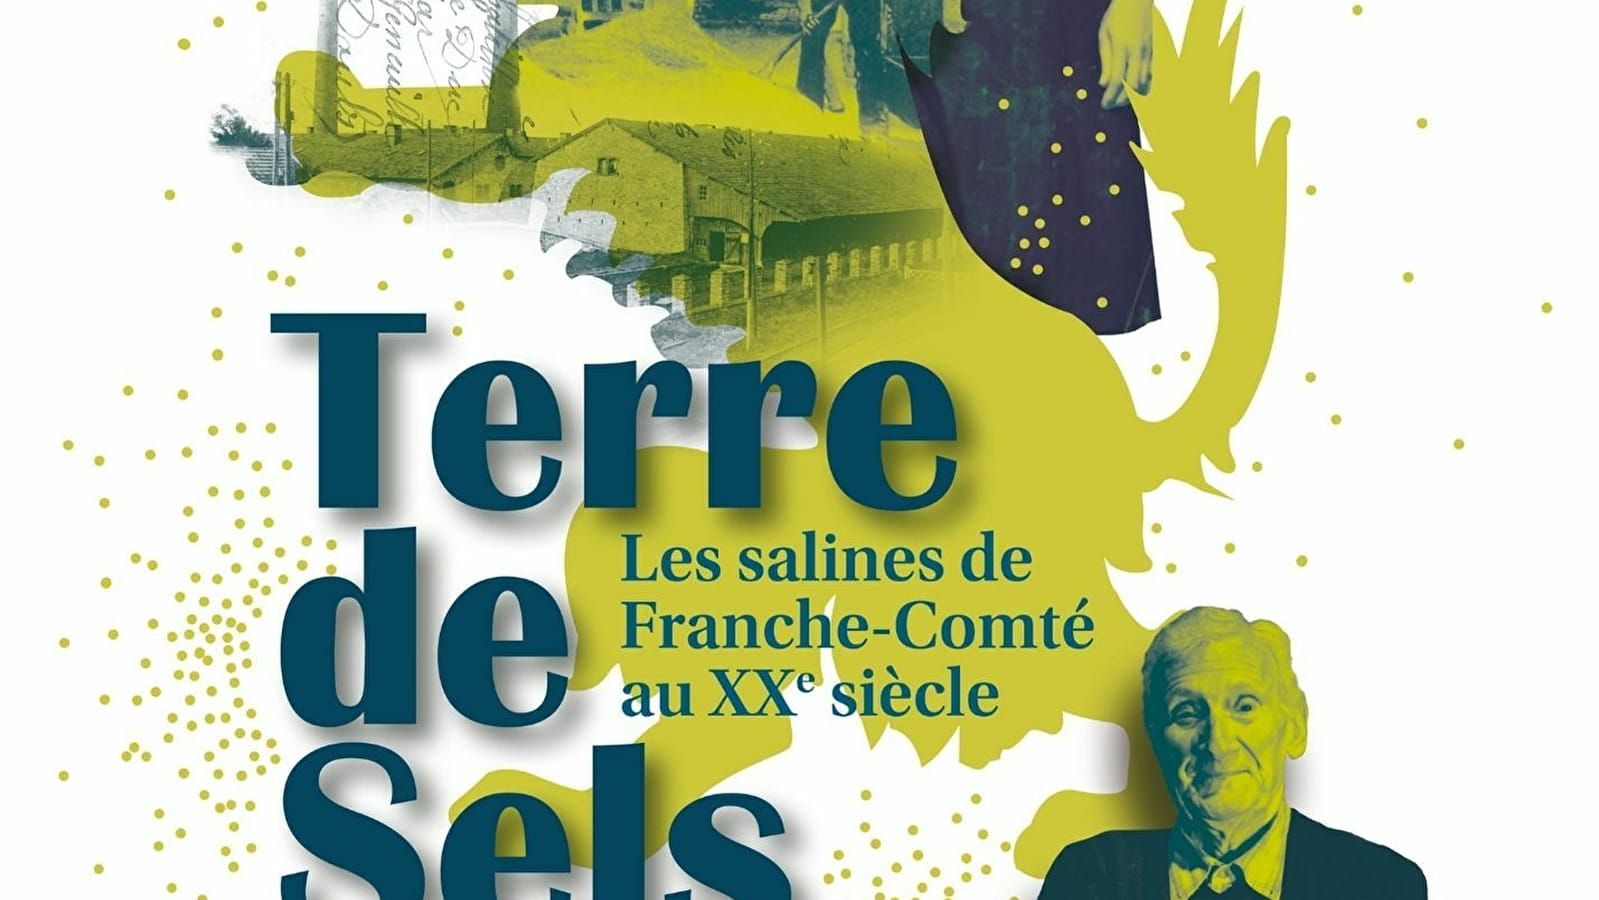 Terre de sels, les Salines en Franche-Comté au XXe siècle